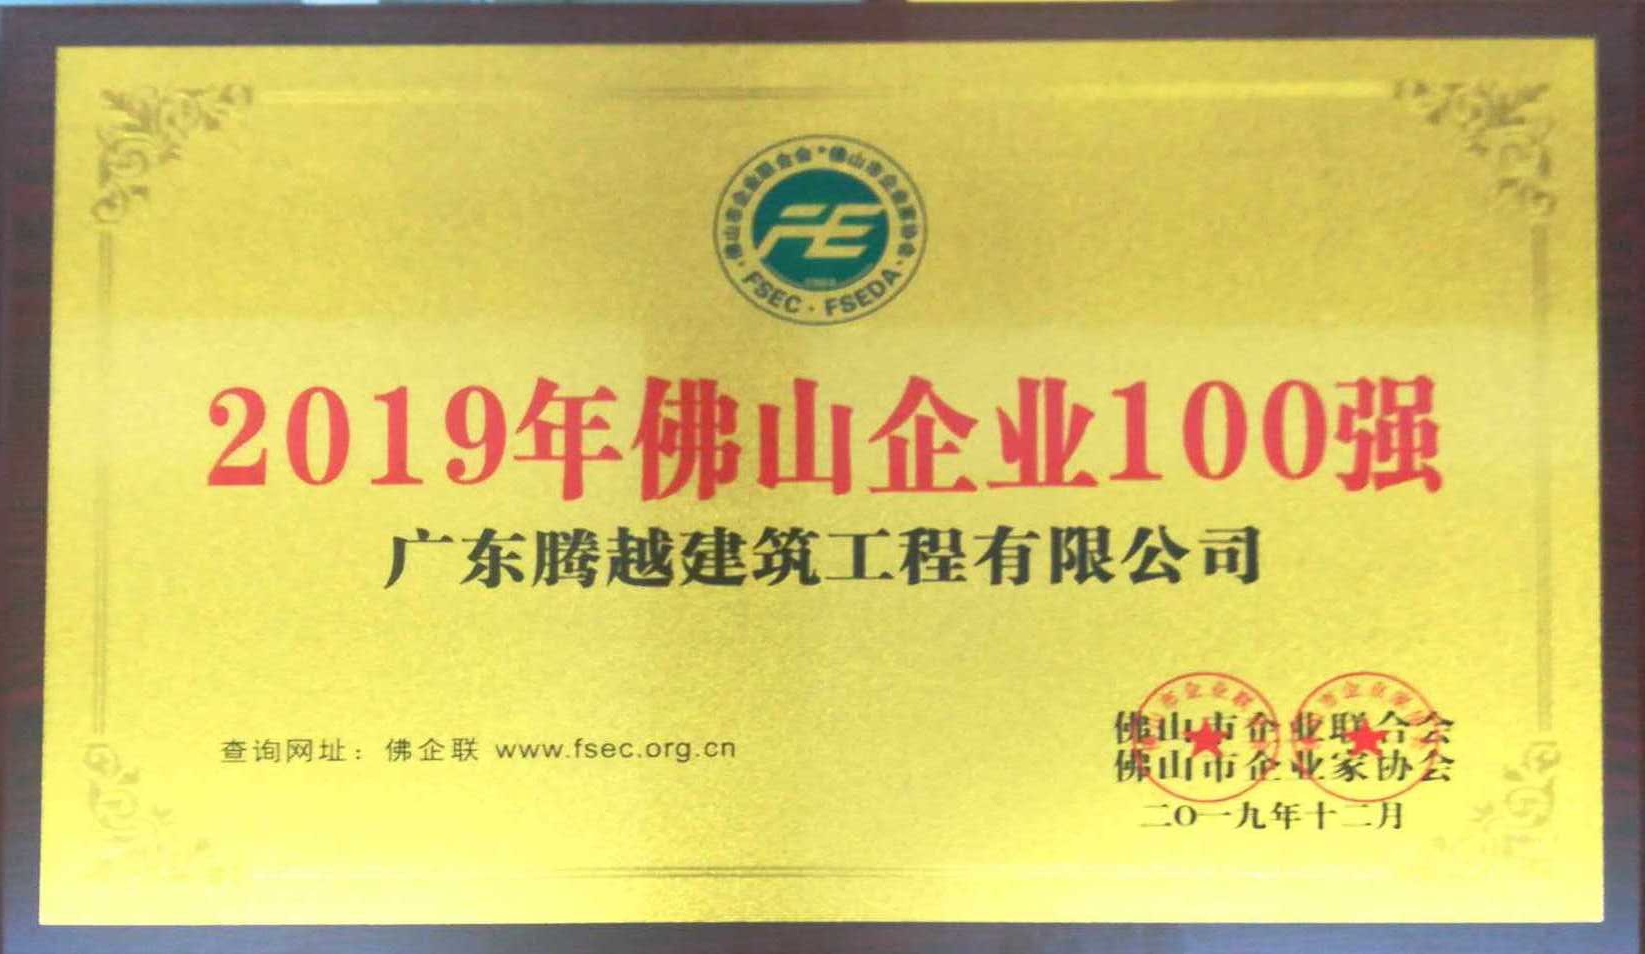 2019年佛山企业100强（欧帝体育(集团)有限公司）